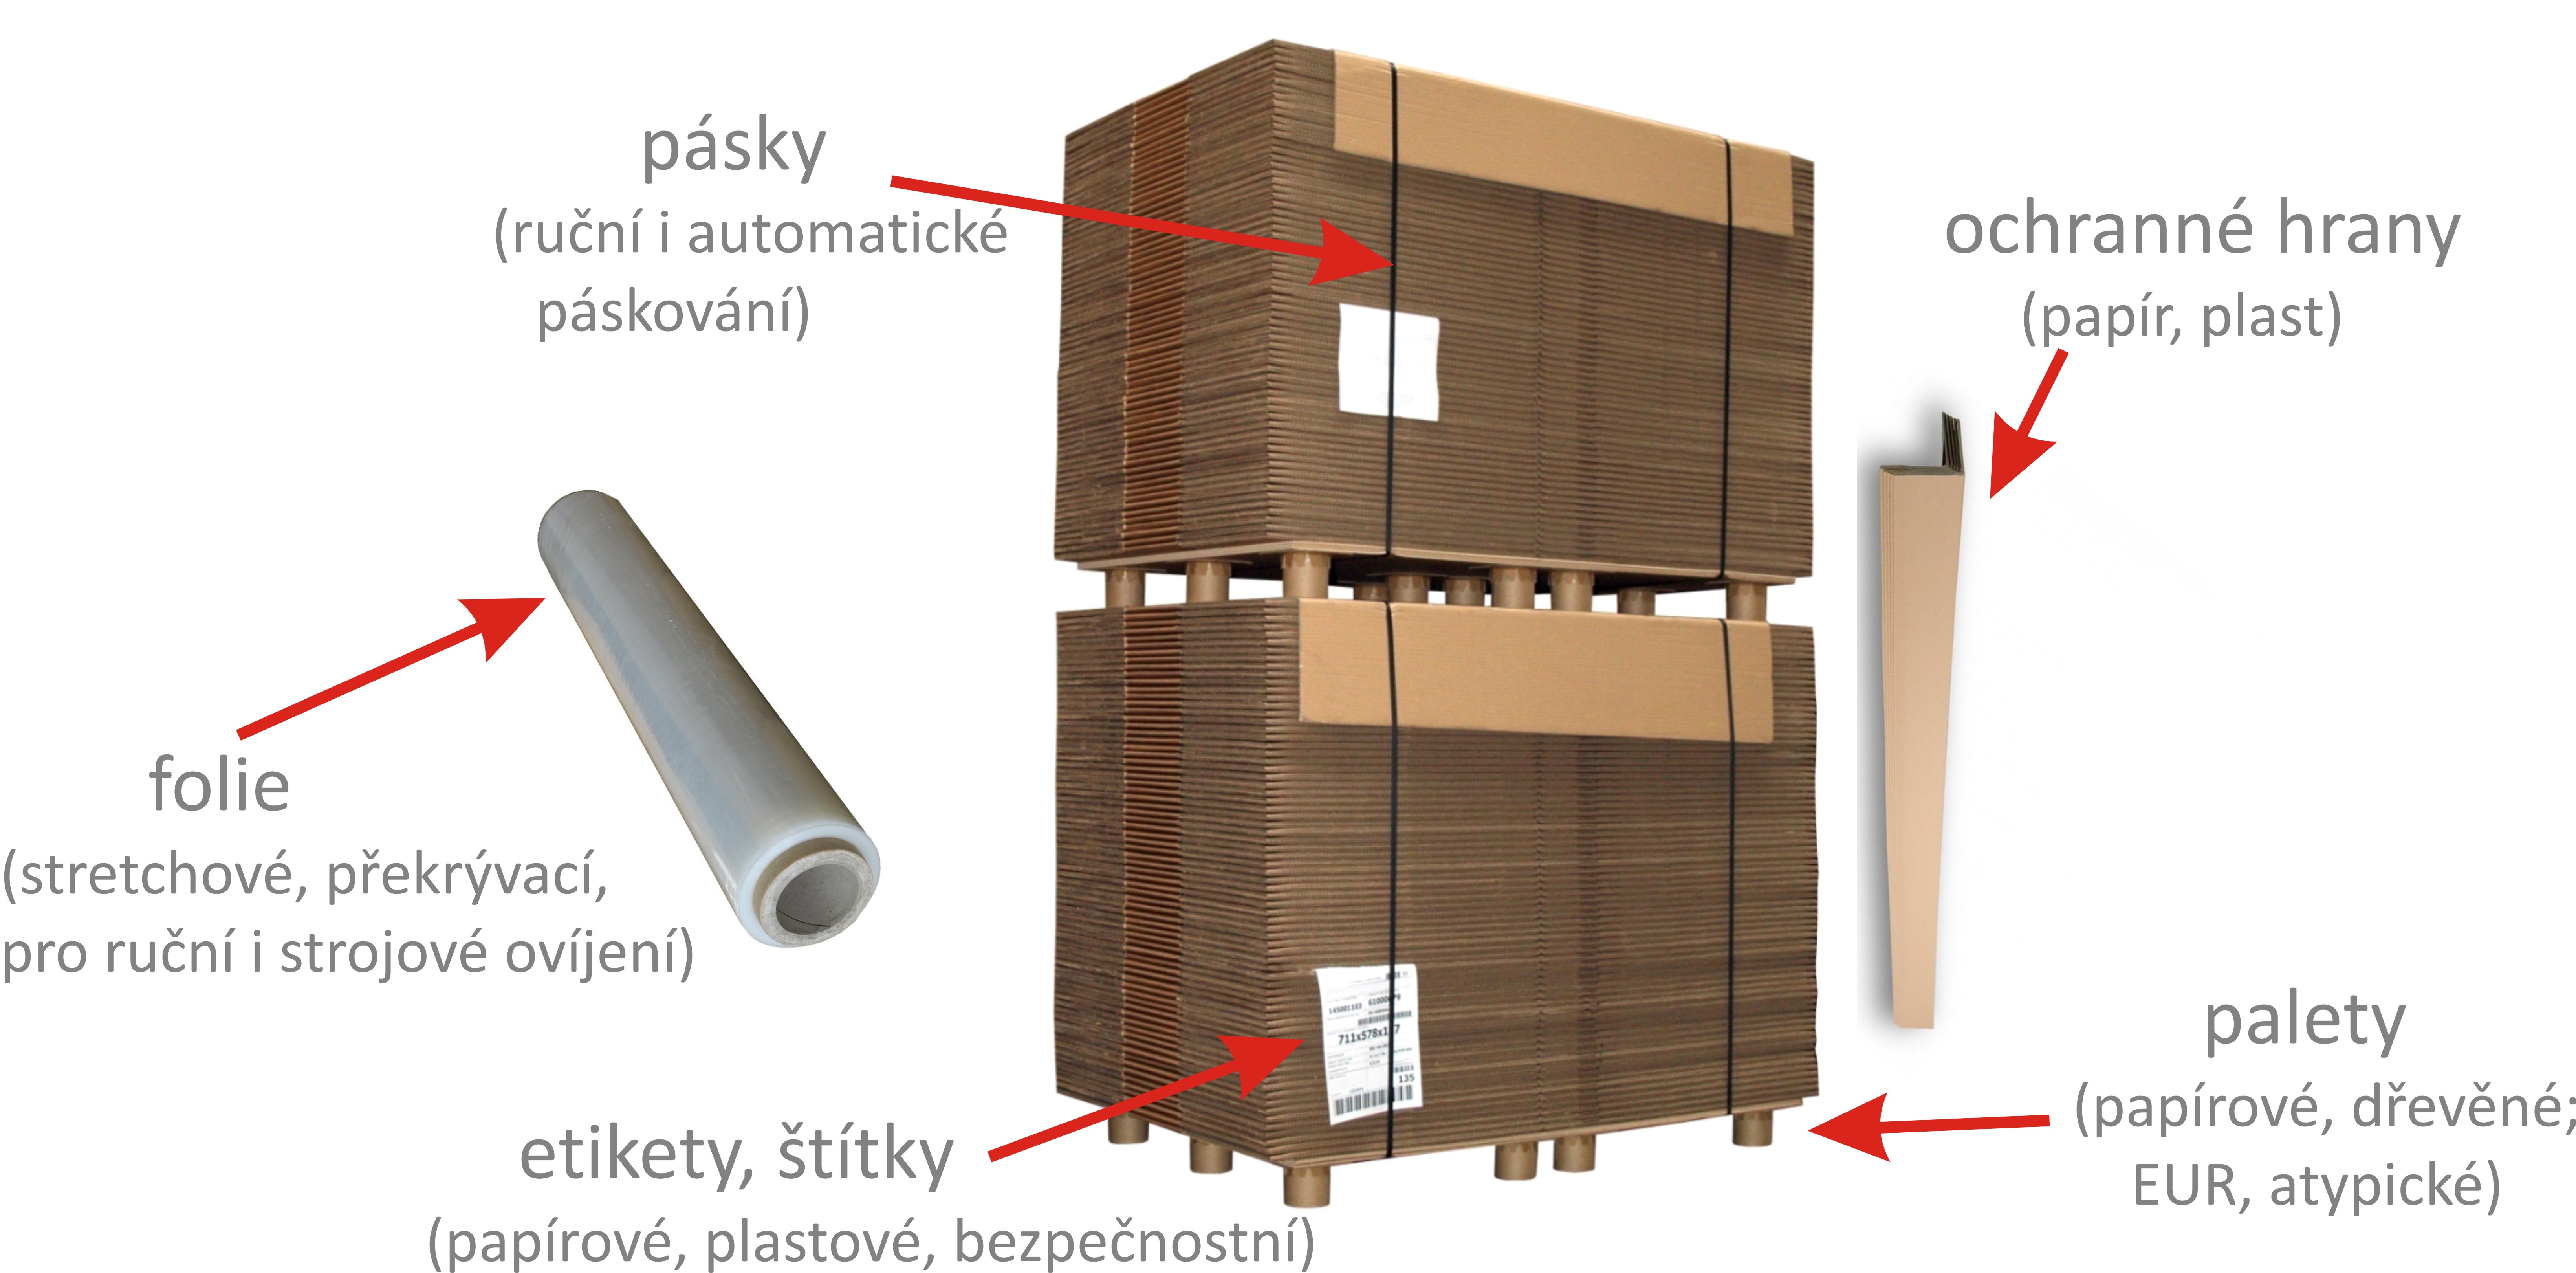 Obaly, sáčky a krabice - bezpečné uložení výrobků (Pardubice)